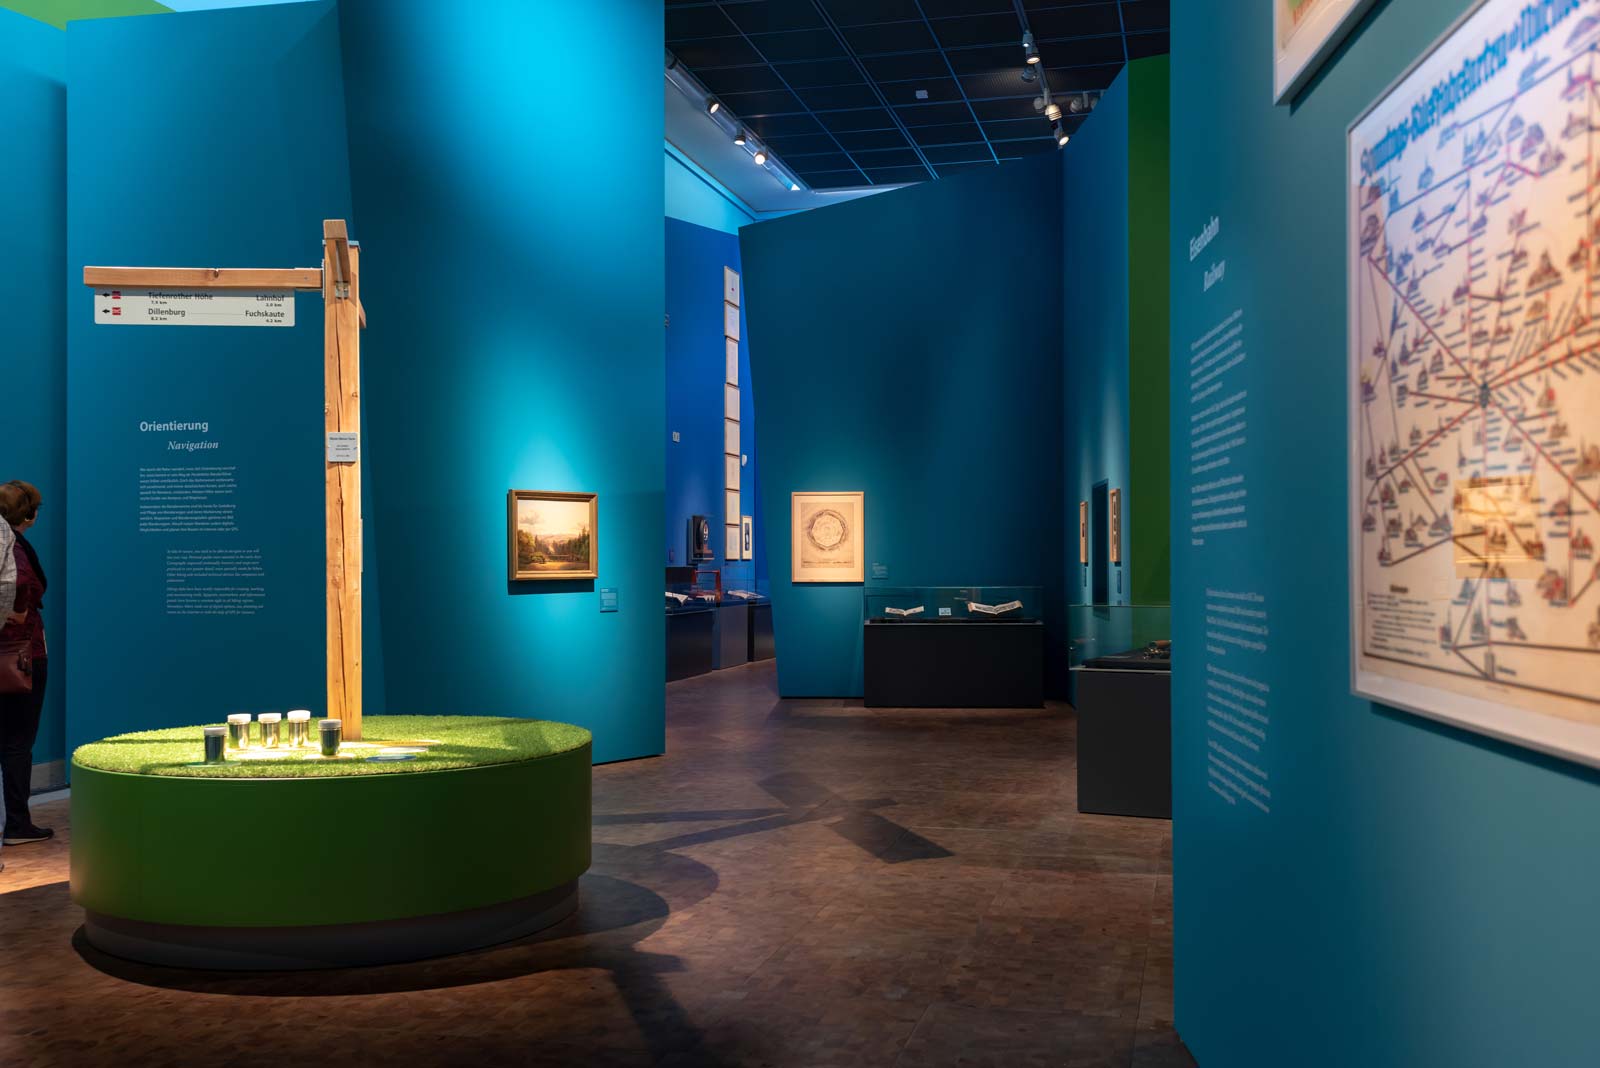 Das Referenzbild für Ausstellungsgestaltung aus der Sonderausstellung Wanderland zeigt das markante Farbkonzept des Ausstellungsrundgangs.